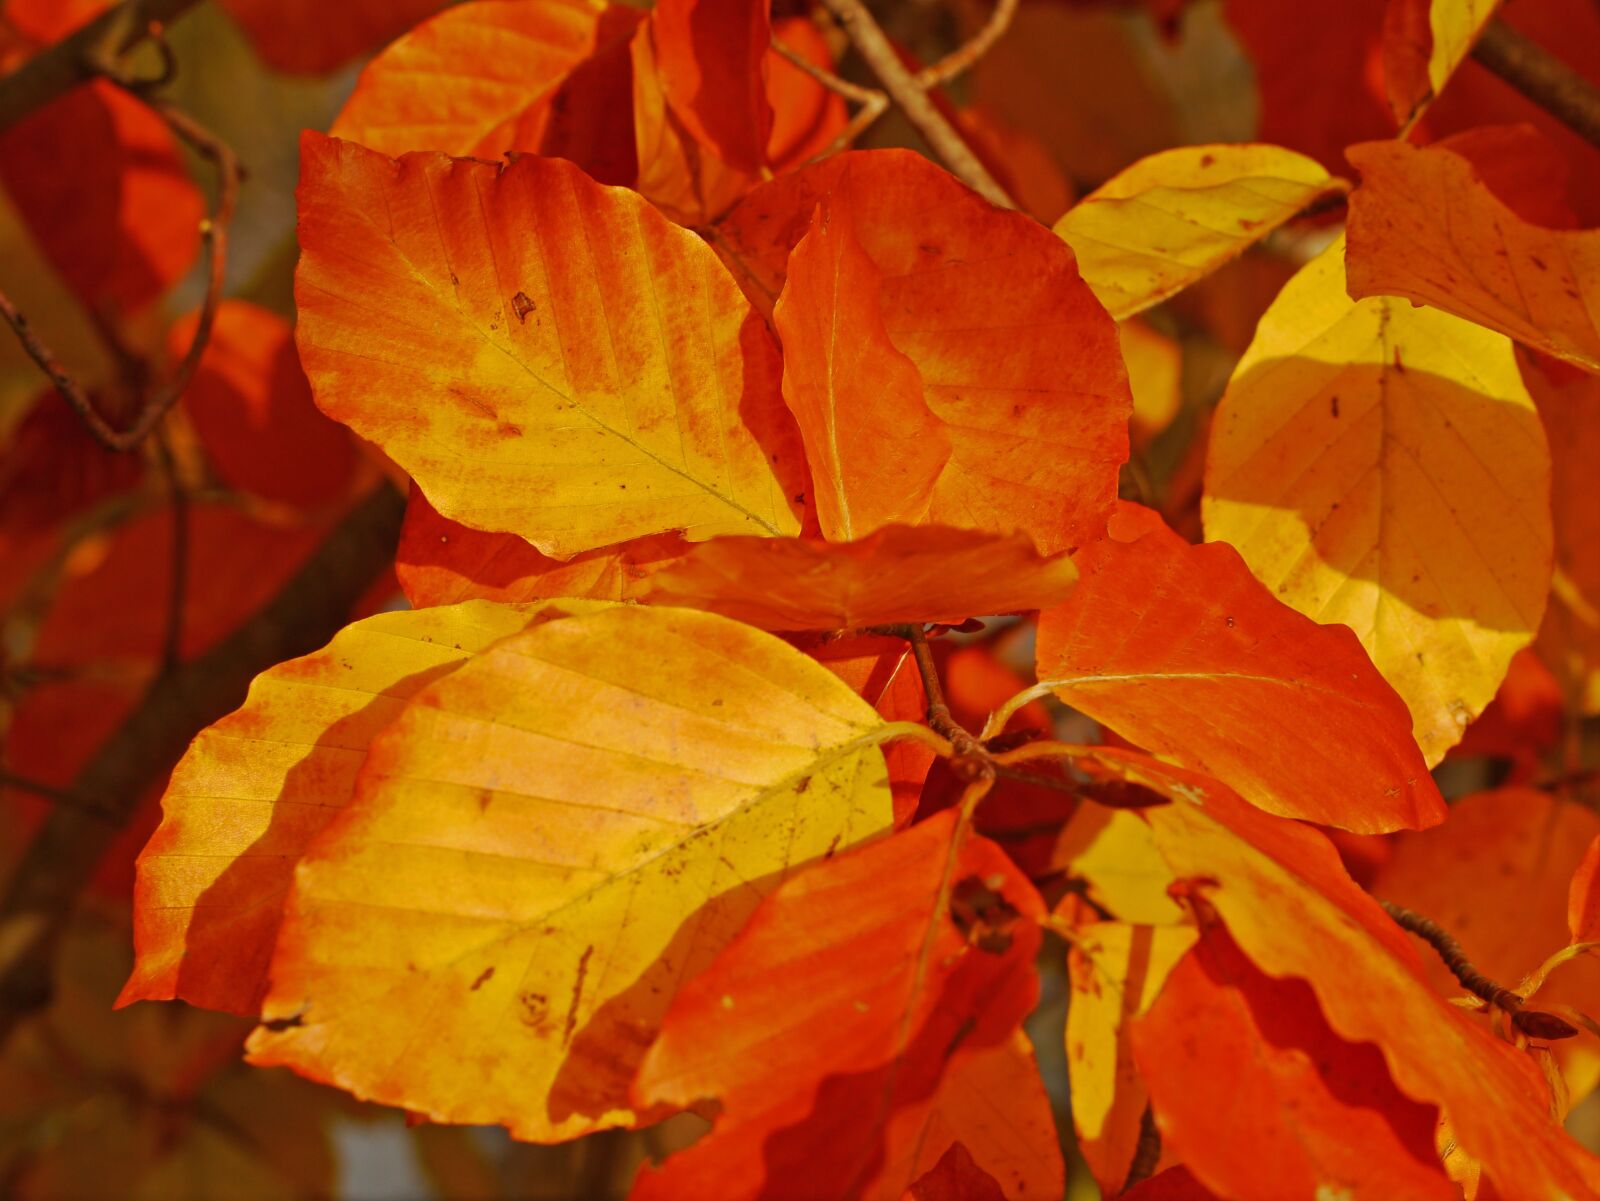 Panasonic Lumix DMC-G3 sample photo. Fall foliage, beech, leaves photography